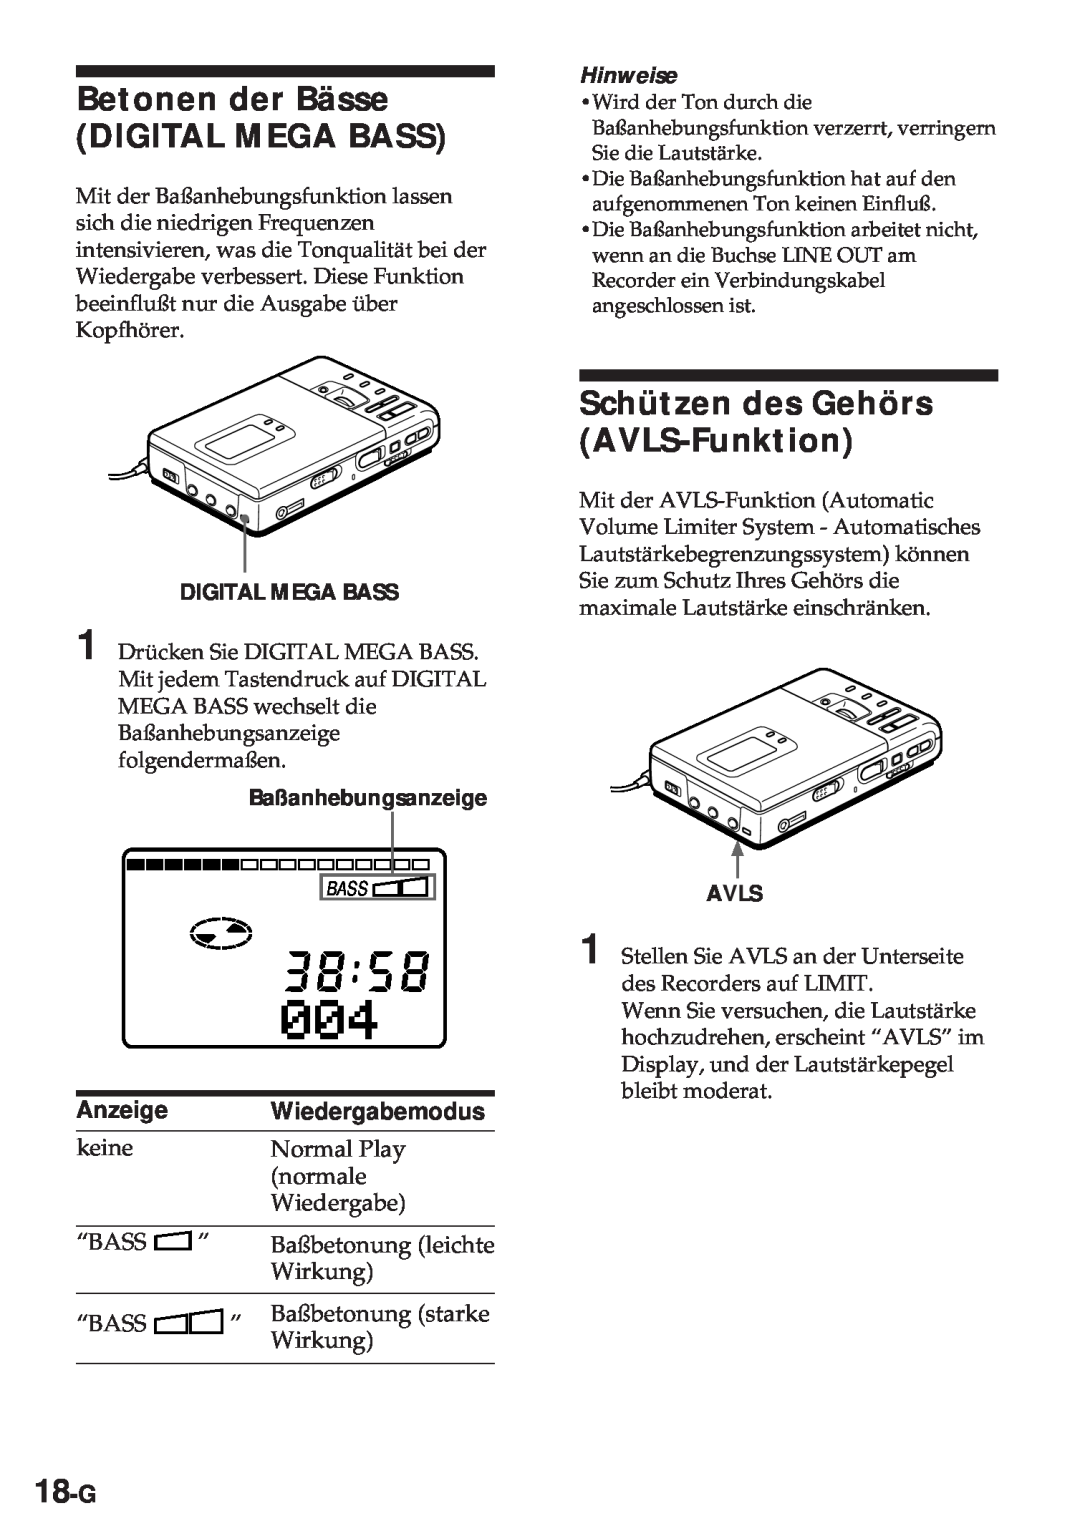 Sony MZ-R30 operating instructions Betonen der Bässe DIGITAL MEGA BASS, Schützen des Gehörs AVLS-Funktion, 18-G, Anzeige 